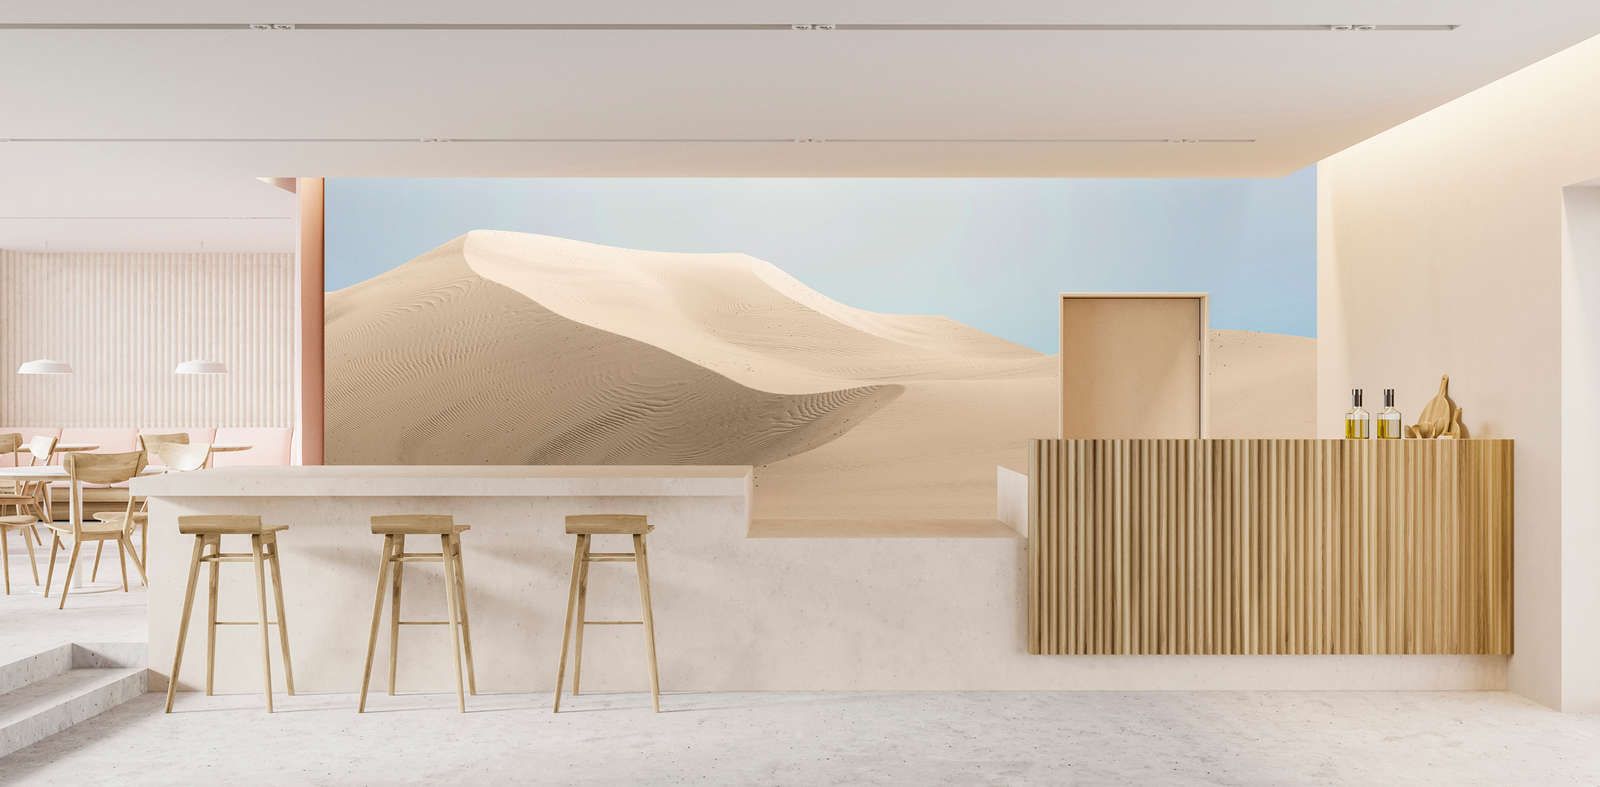             papier peint en papier »dunes« - paysage désertique aux couleurs pastel - intissé légèrement structuré
        